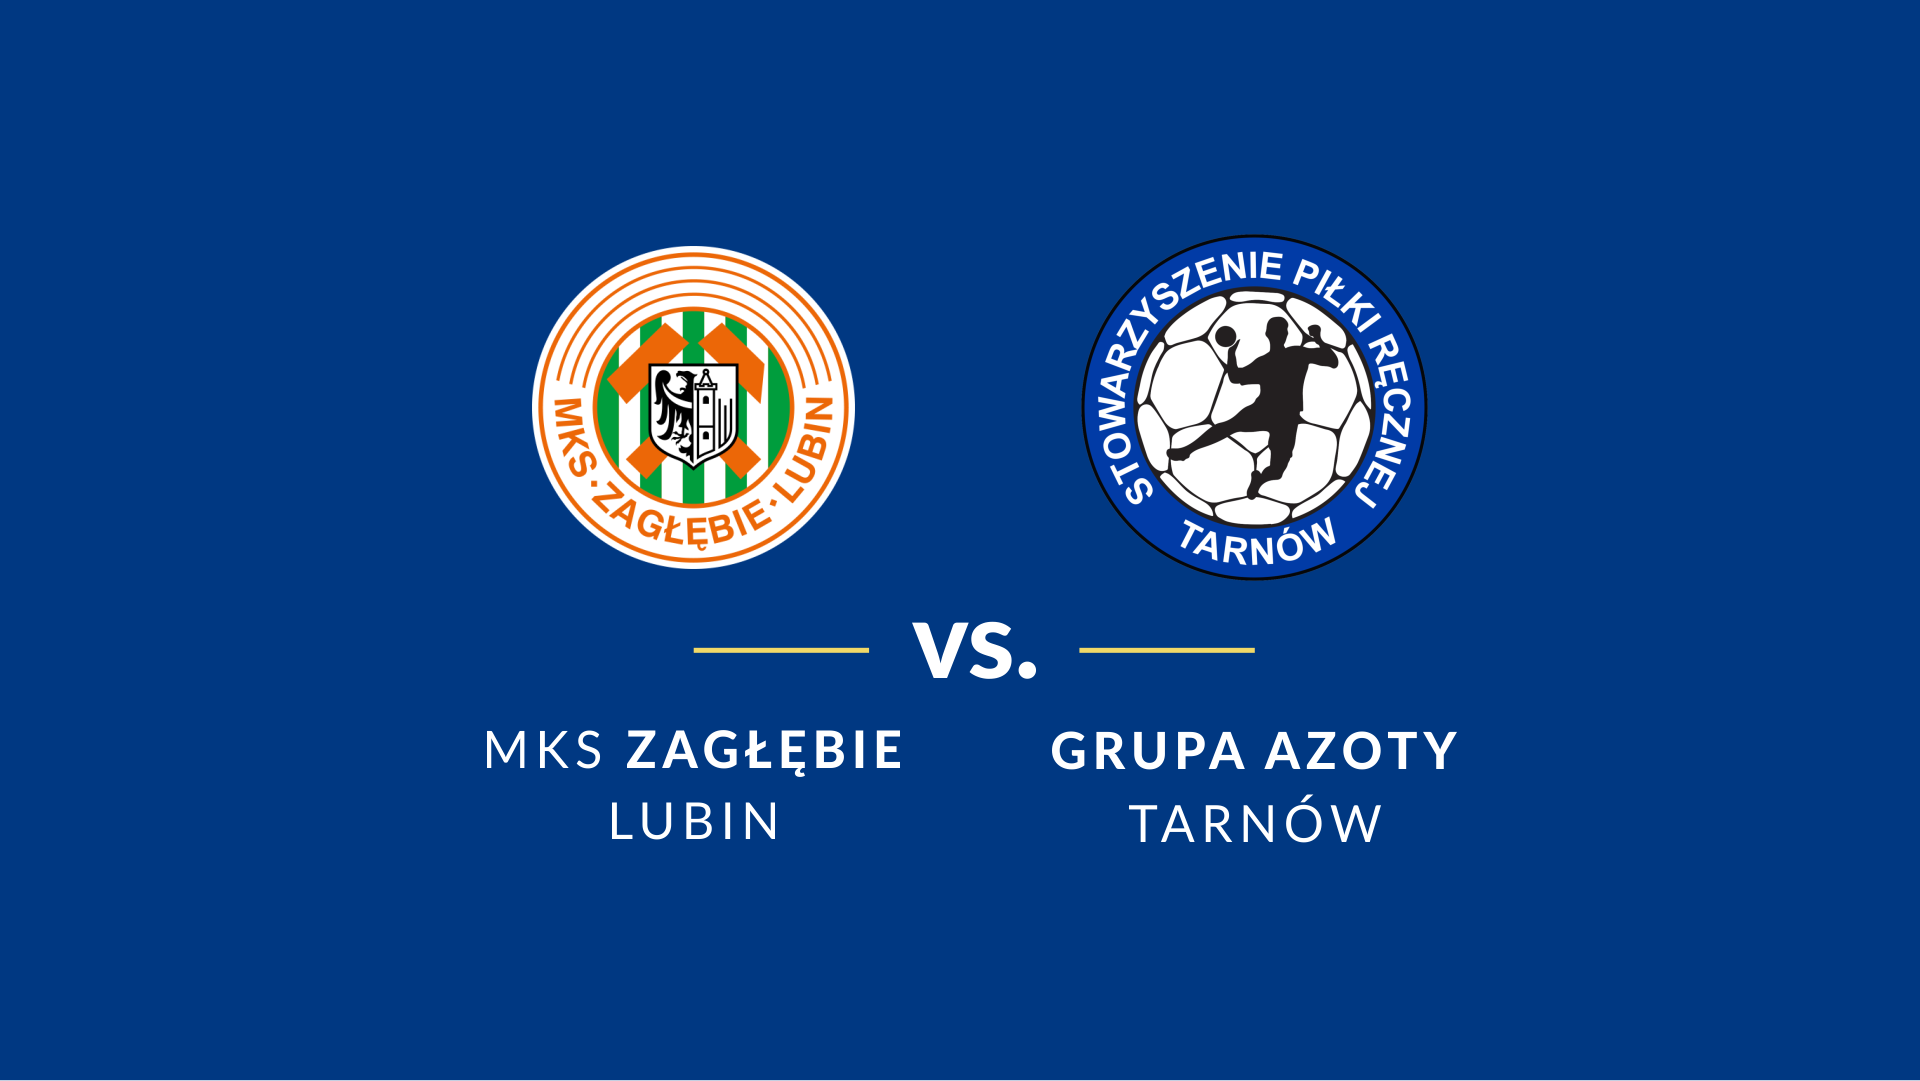 baner - logotypy Grupa Azoty Tarnów i Zagłębie Lubin